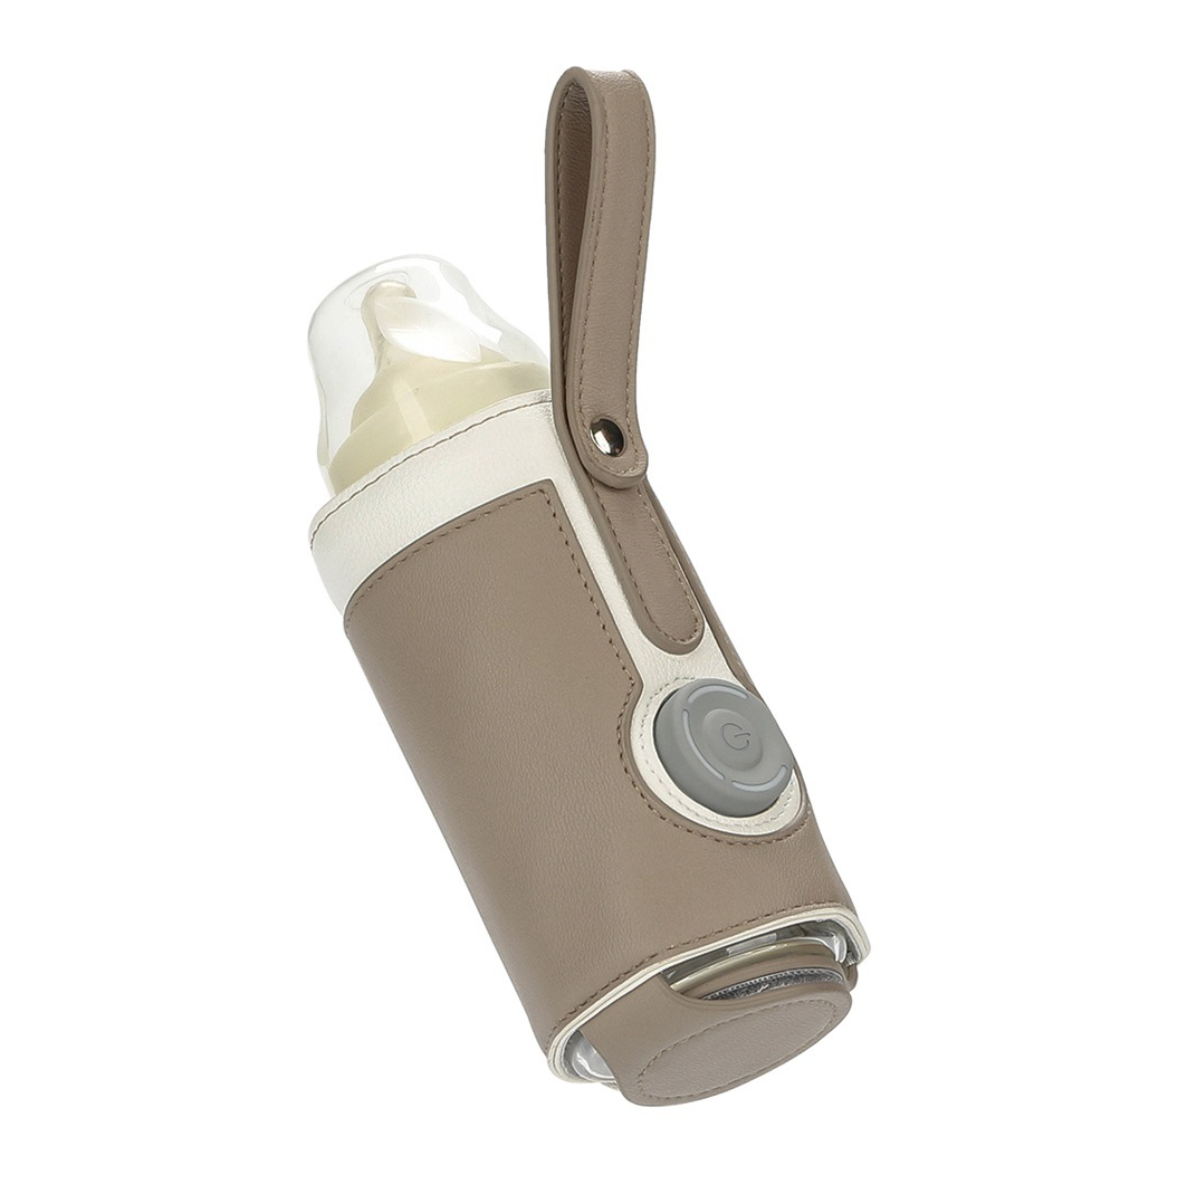 Thermal einfach&praktisch-5V UWOT Cover: Tragbar&elegant, sicher&kontrollierbar, Babykostwärmer Braun Smart Bottle